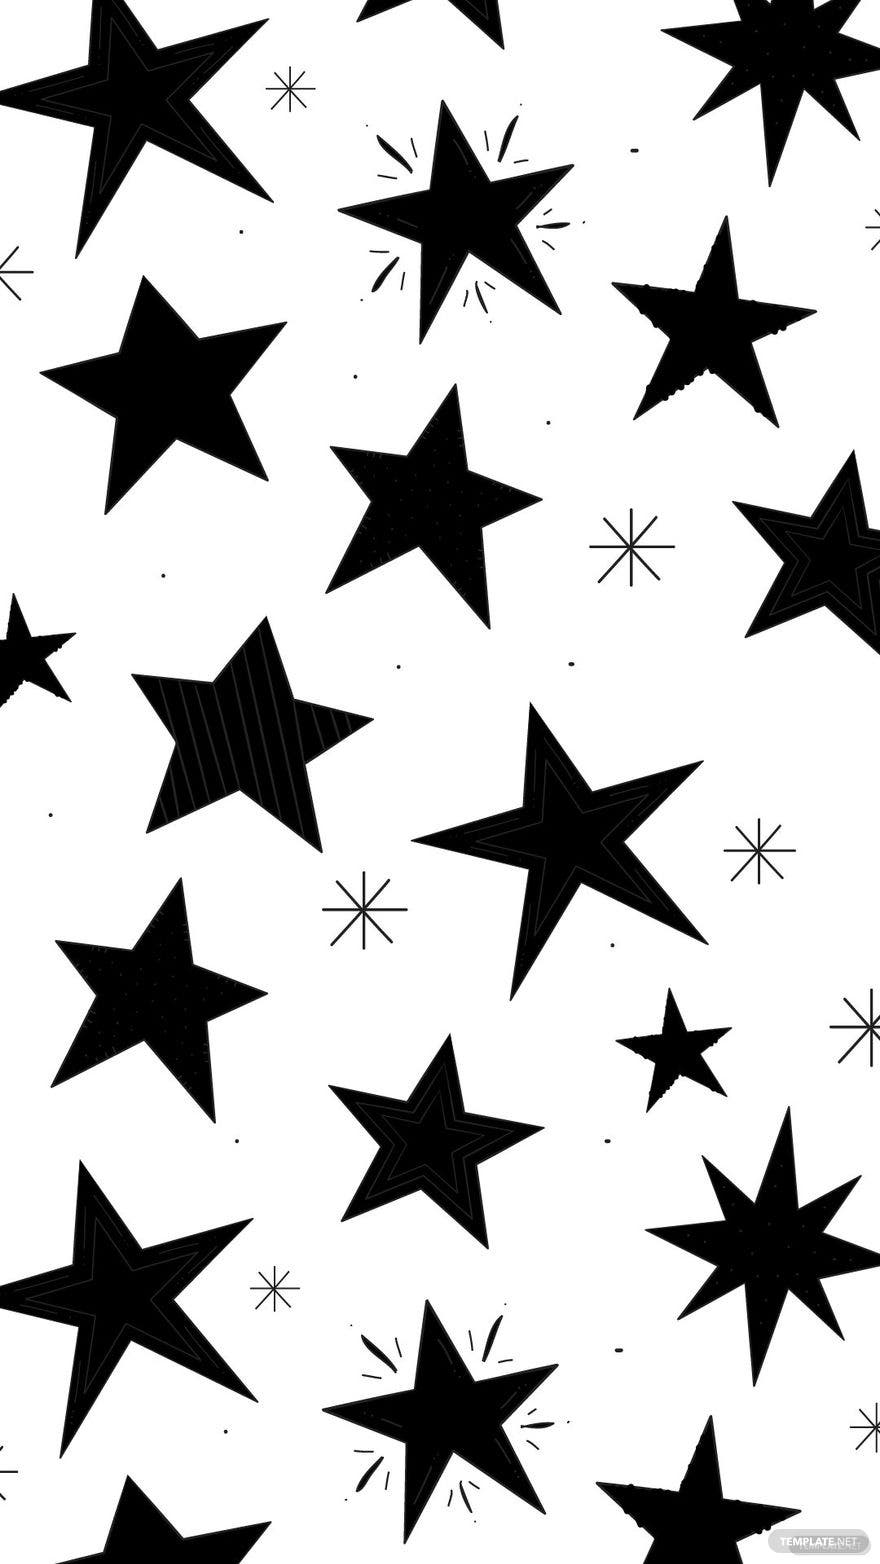 Free Aesthetic black star background, Illustrator, JPG, SVG